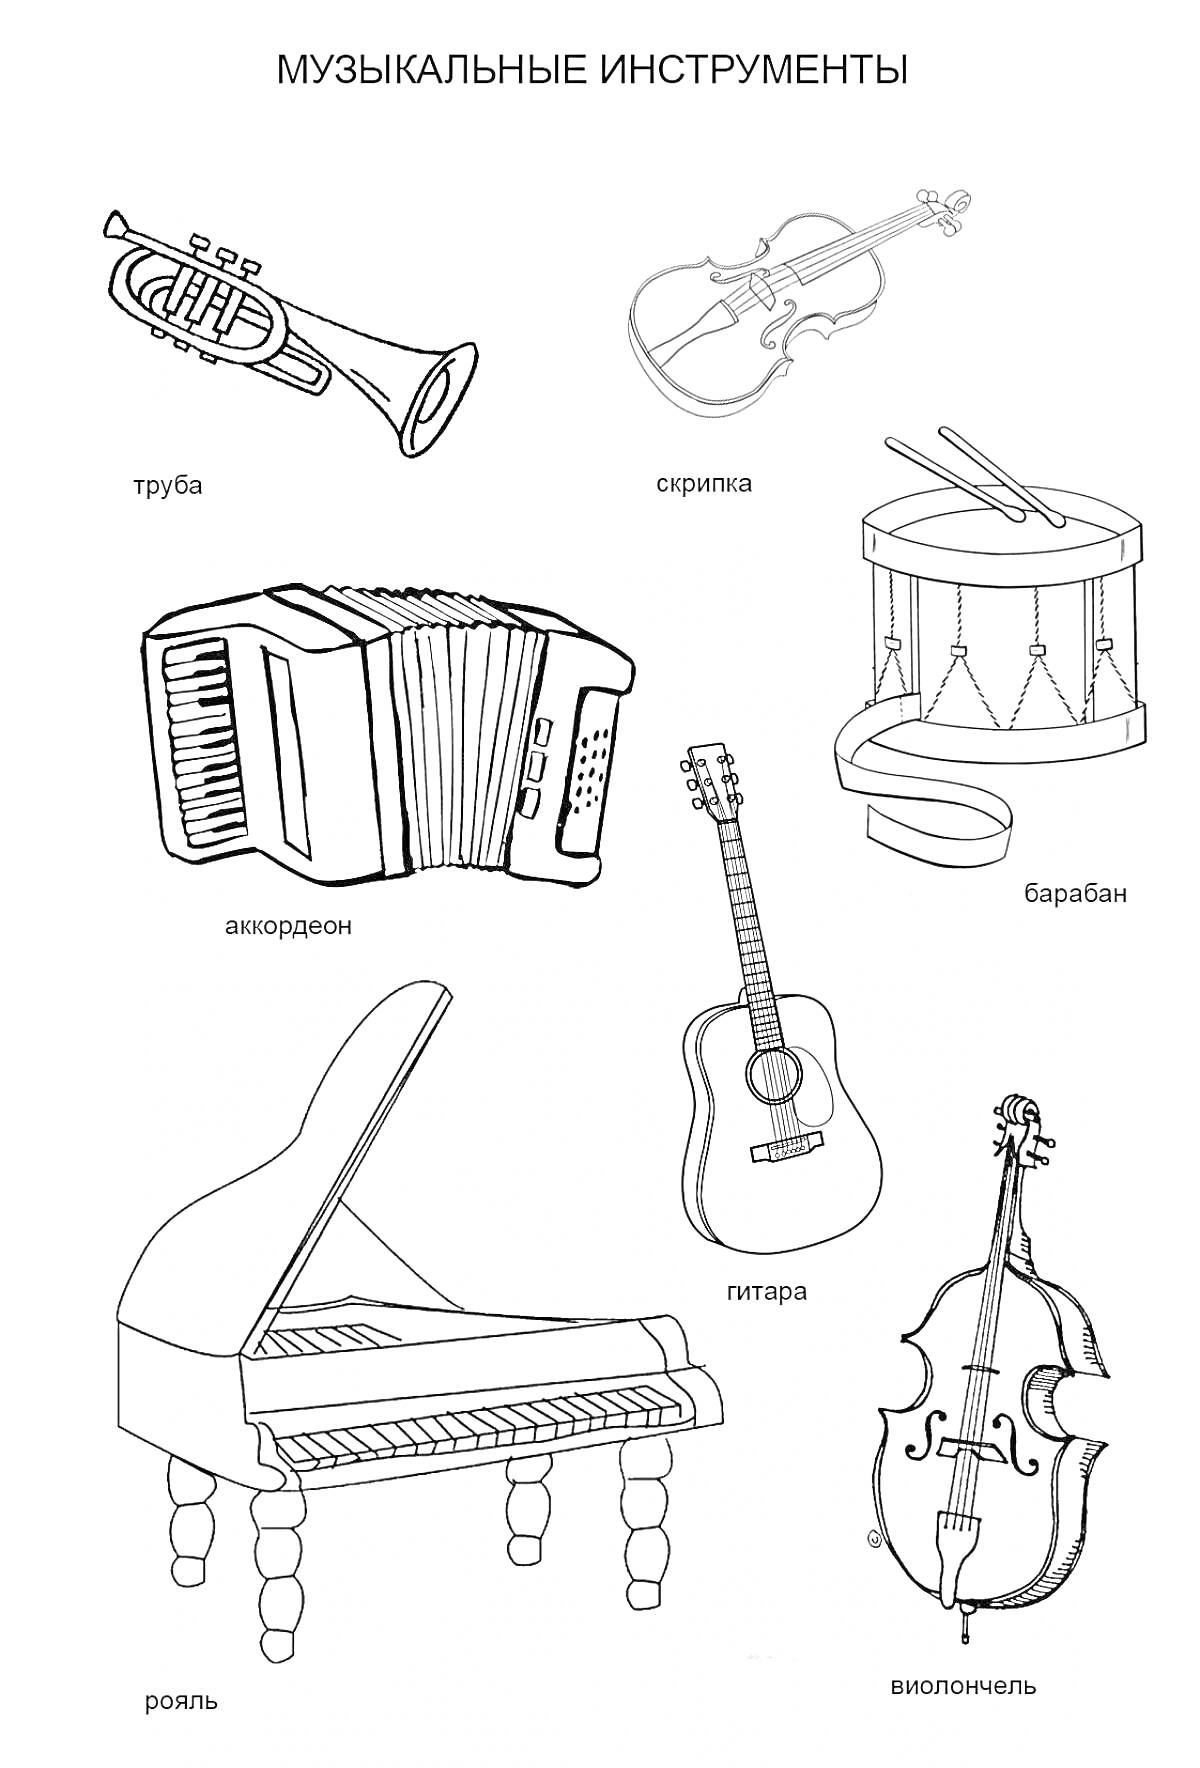 Раскраска Музыкальные инструменты - труба, скрипка, барабан, аккордеон, гитара, рояль, виолончель